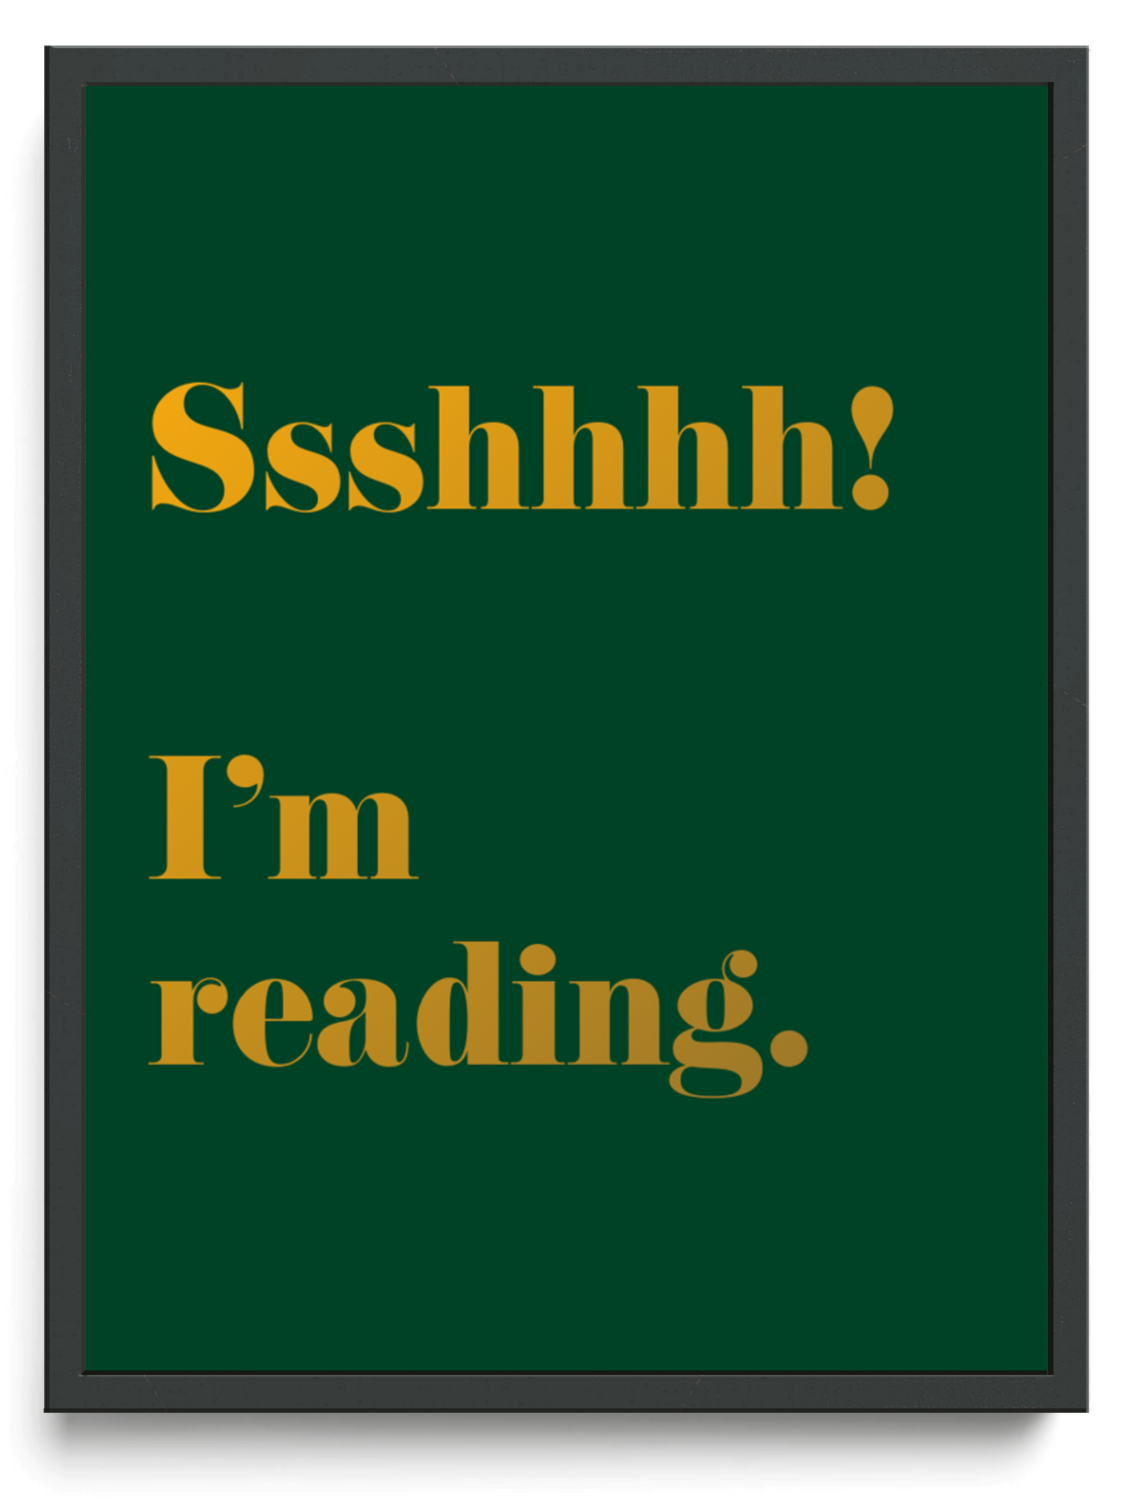 Ssshhhh Im reading framed typographic print